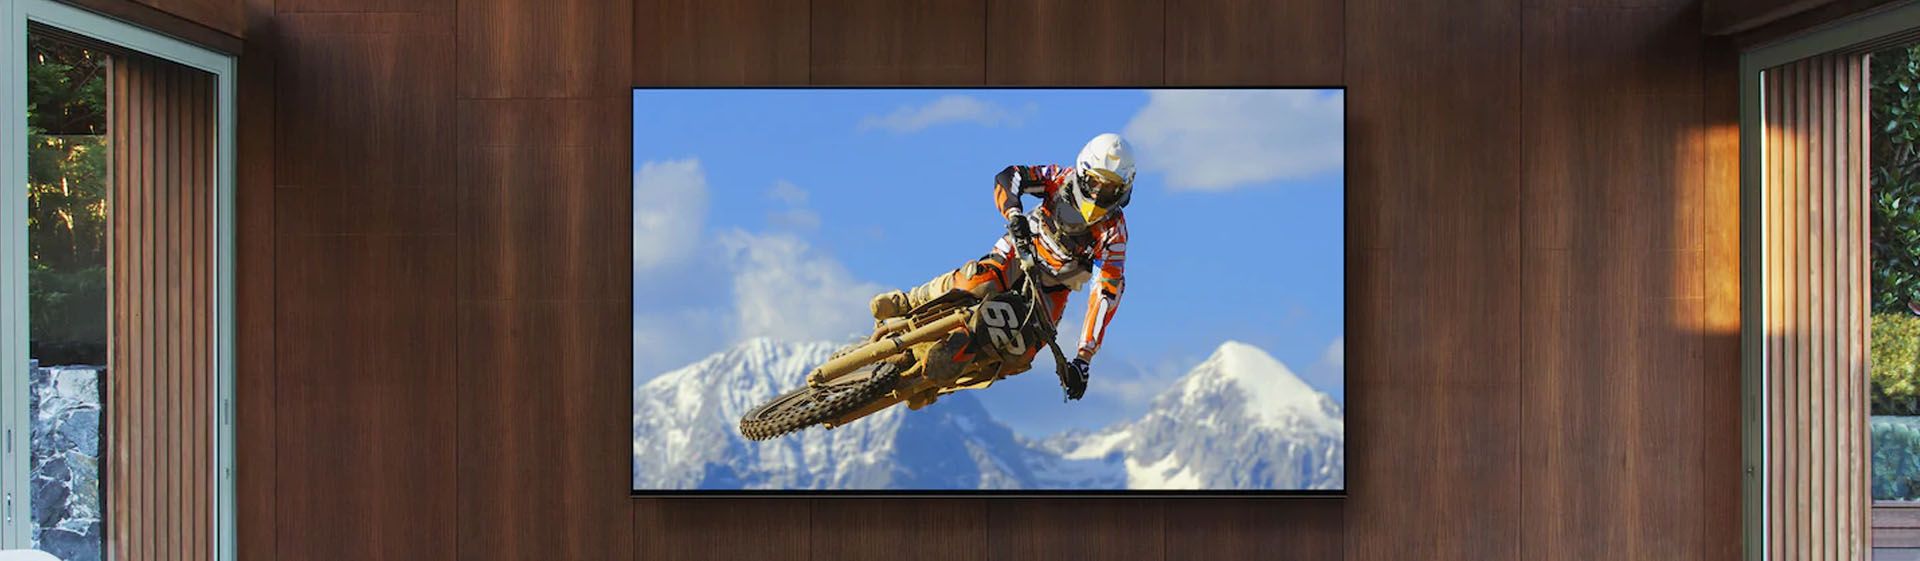 Smart TV plana em parede de madeira exibindo imagem de motocross